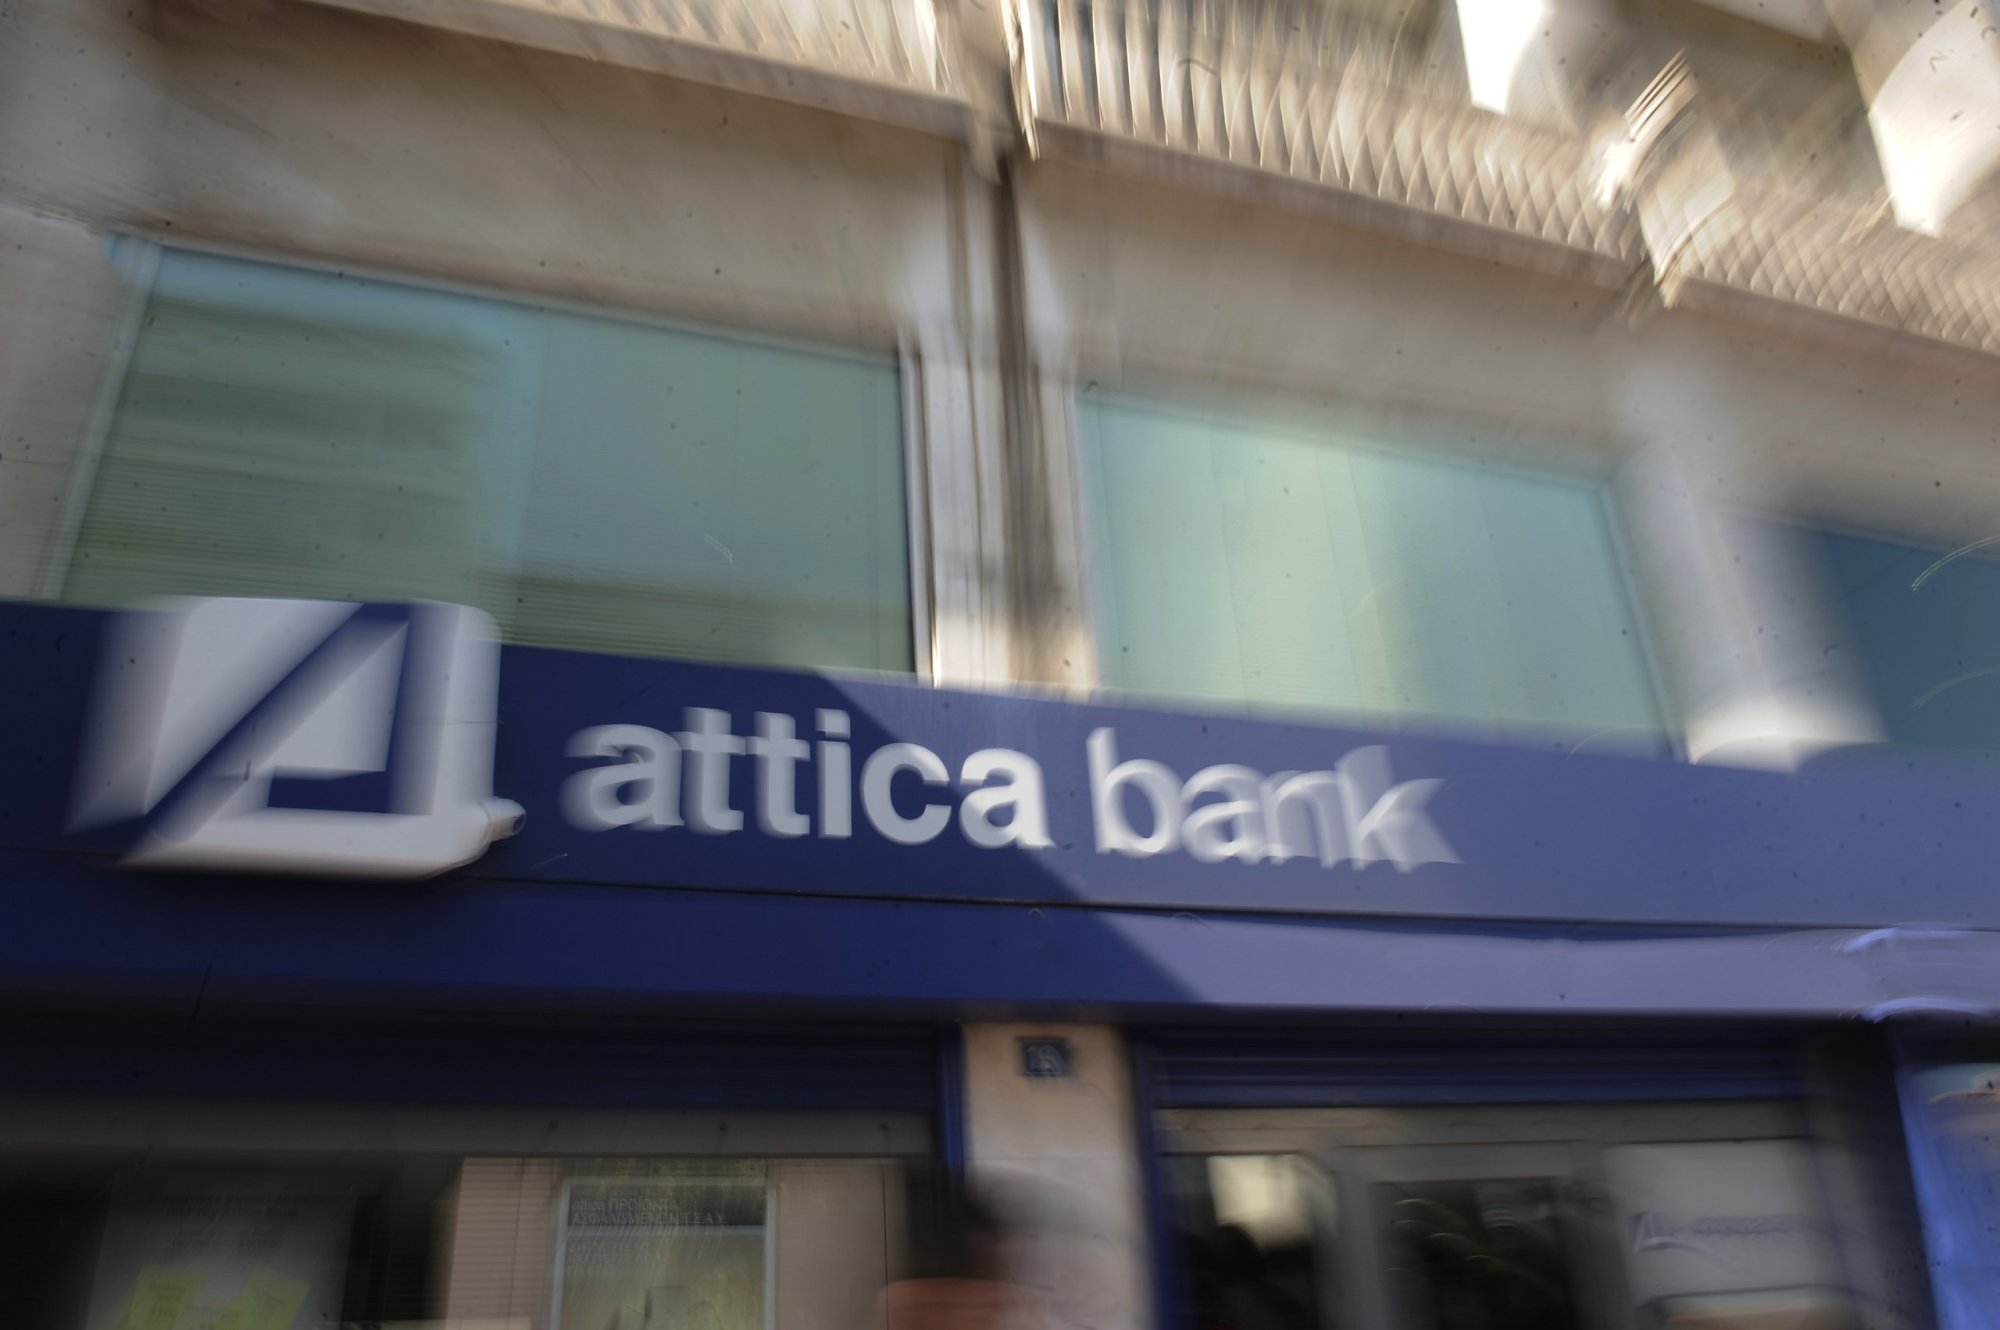 Ζημία του Δημοσίου με «αδιαφανή συμφωνία» για Attica Bank καταγγέλλει ο ΣΥΡΙΖΑ - Υπεκφεύγει ουσιαστικής απάντησης το ΥΠΟΙΚ